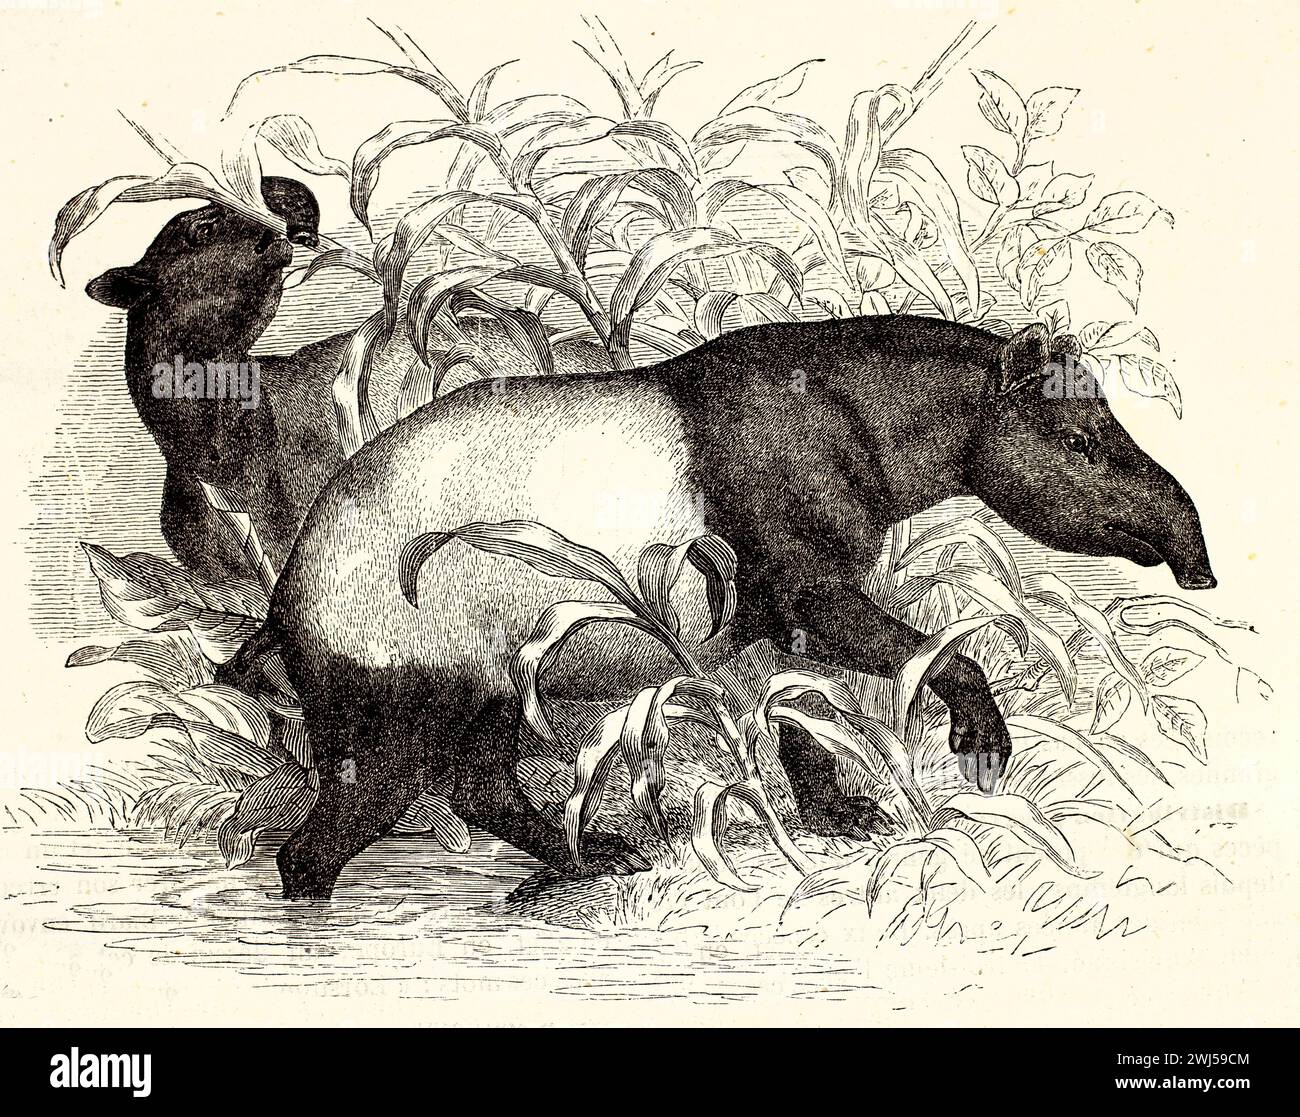 Vecchia illustrazione incisa di tapir malese. Creato da Zimmermann e Illner, pubblicato su Brehm, Les Mammifers, Baillière et fils, Parigi, 1878 Foto Stock